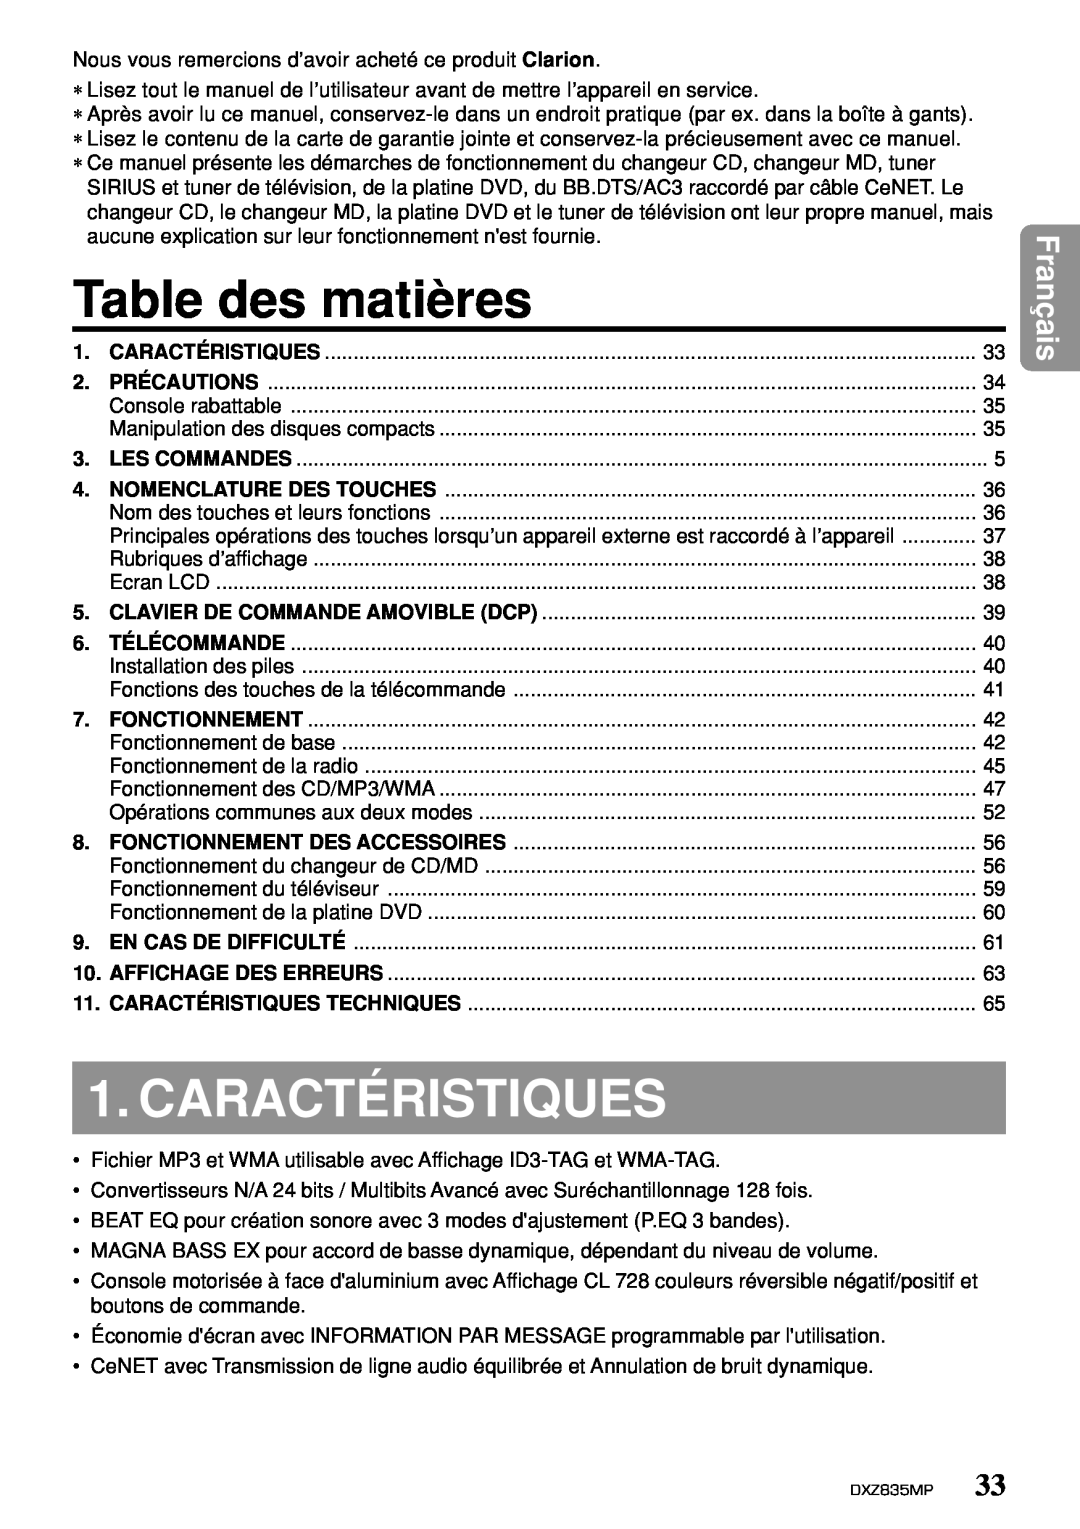 Clarion DXZ835MP owner manual Table des matières, Caractéristiques, Français 